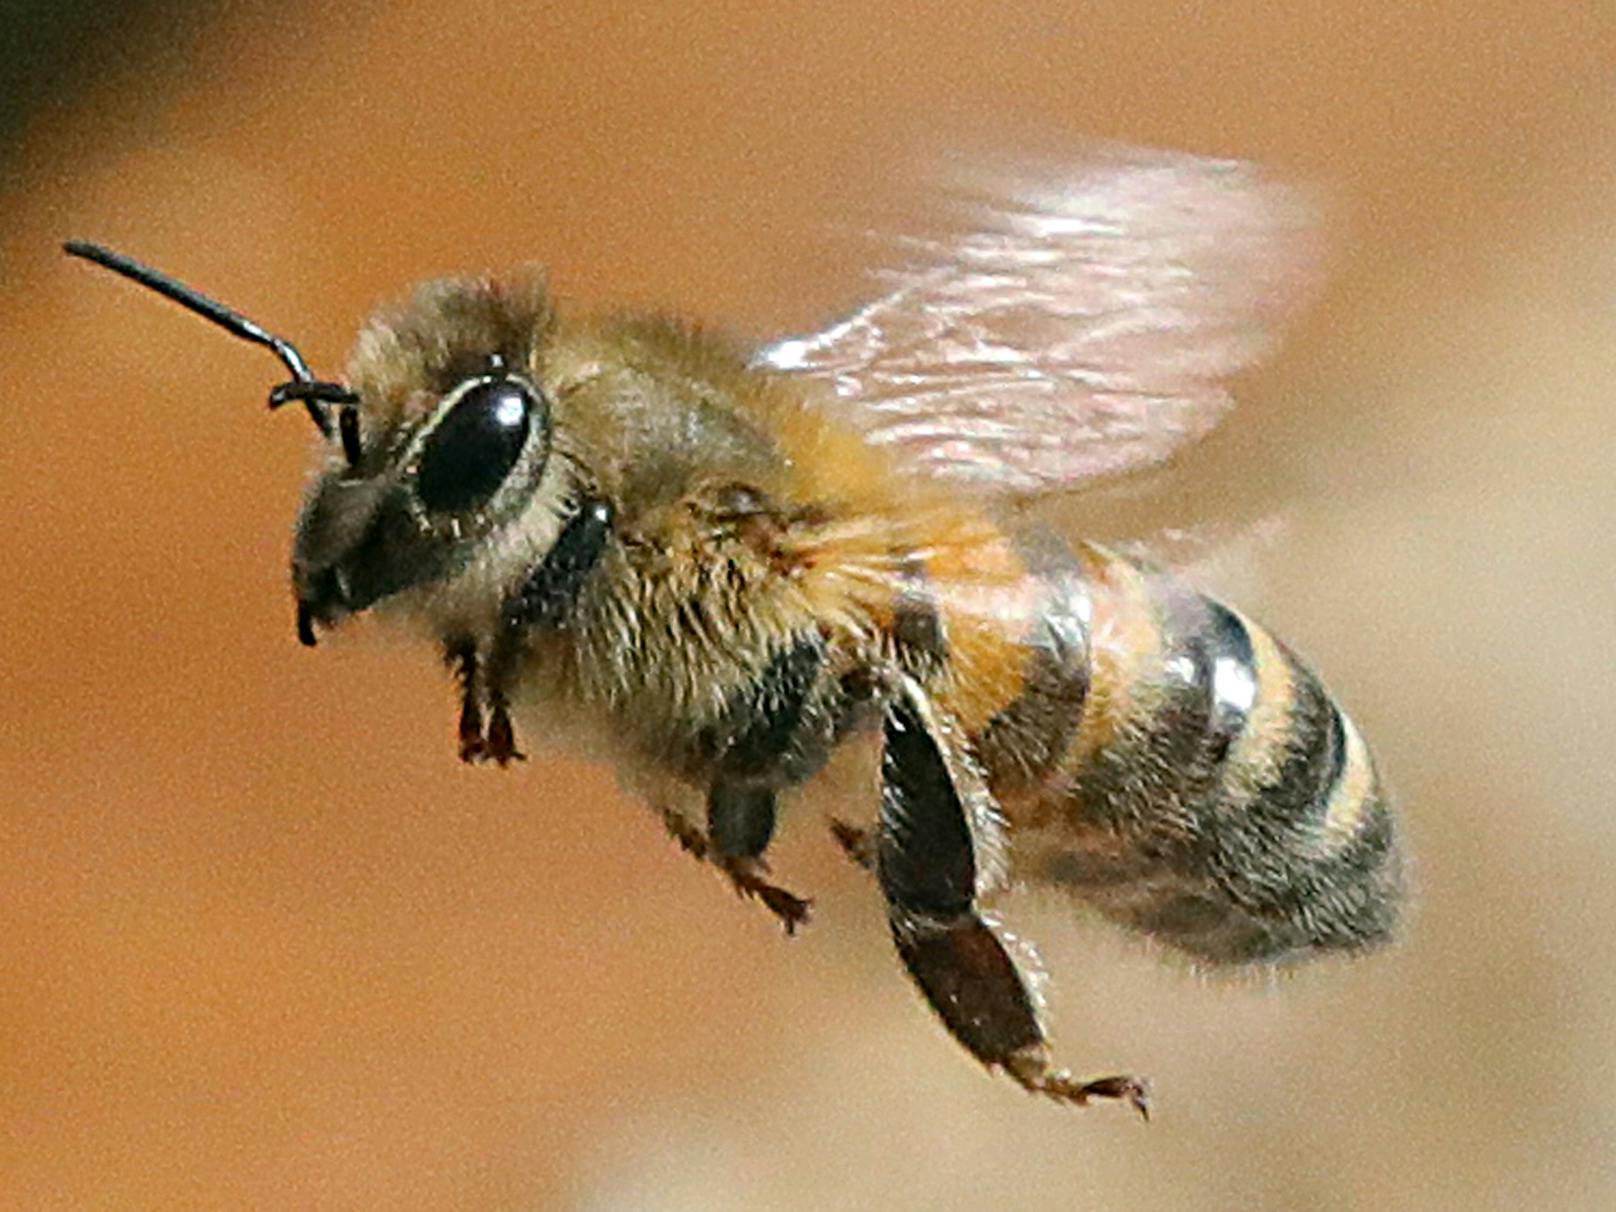 Neonicotinoide wurden 2018 von der EU-Kommission verboten, nachdem auch die Europäische Behörde für Lebensmittelsicherheit die Schädlichkeit der Stoffe für Wild- und Honigbienen bestätigt hatte.